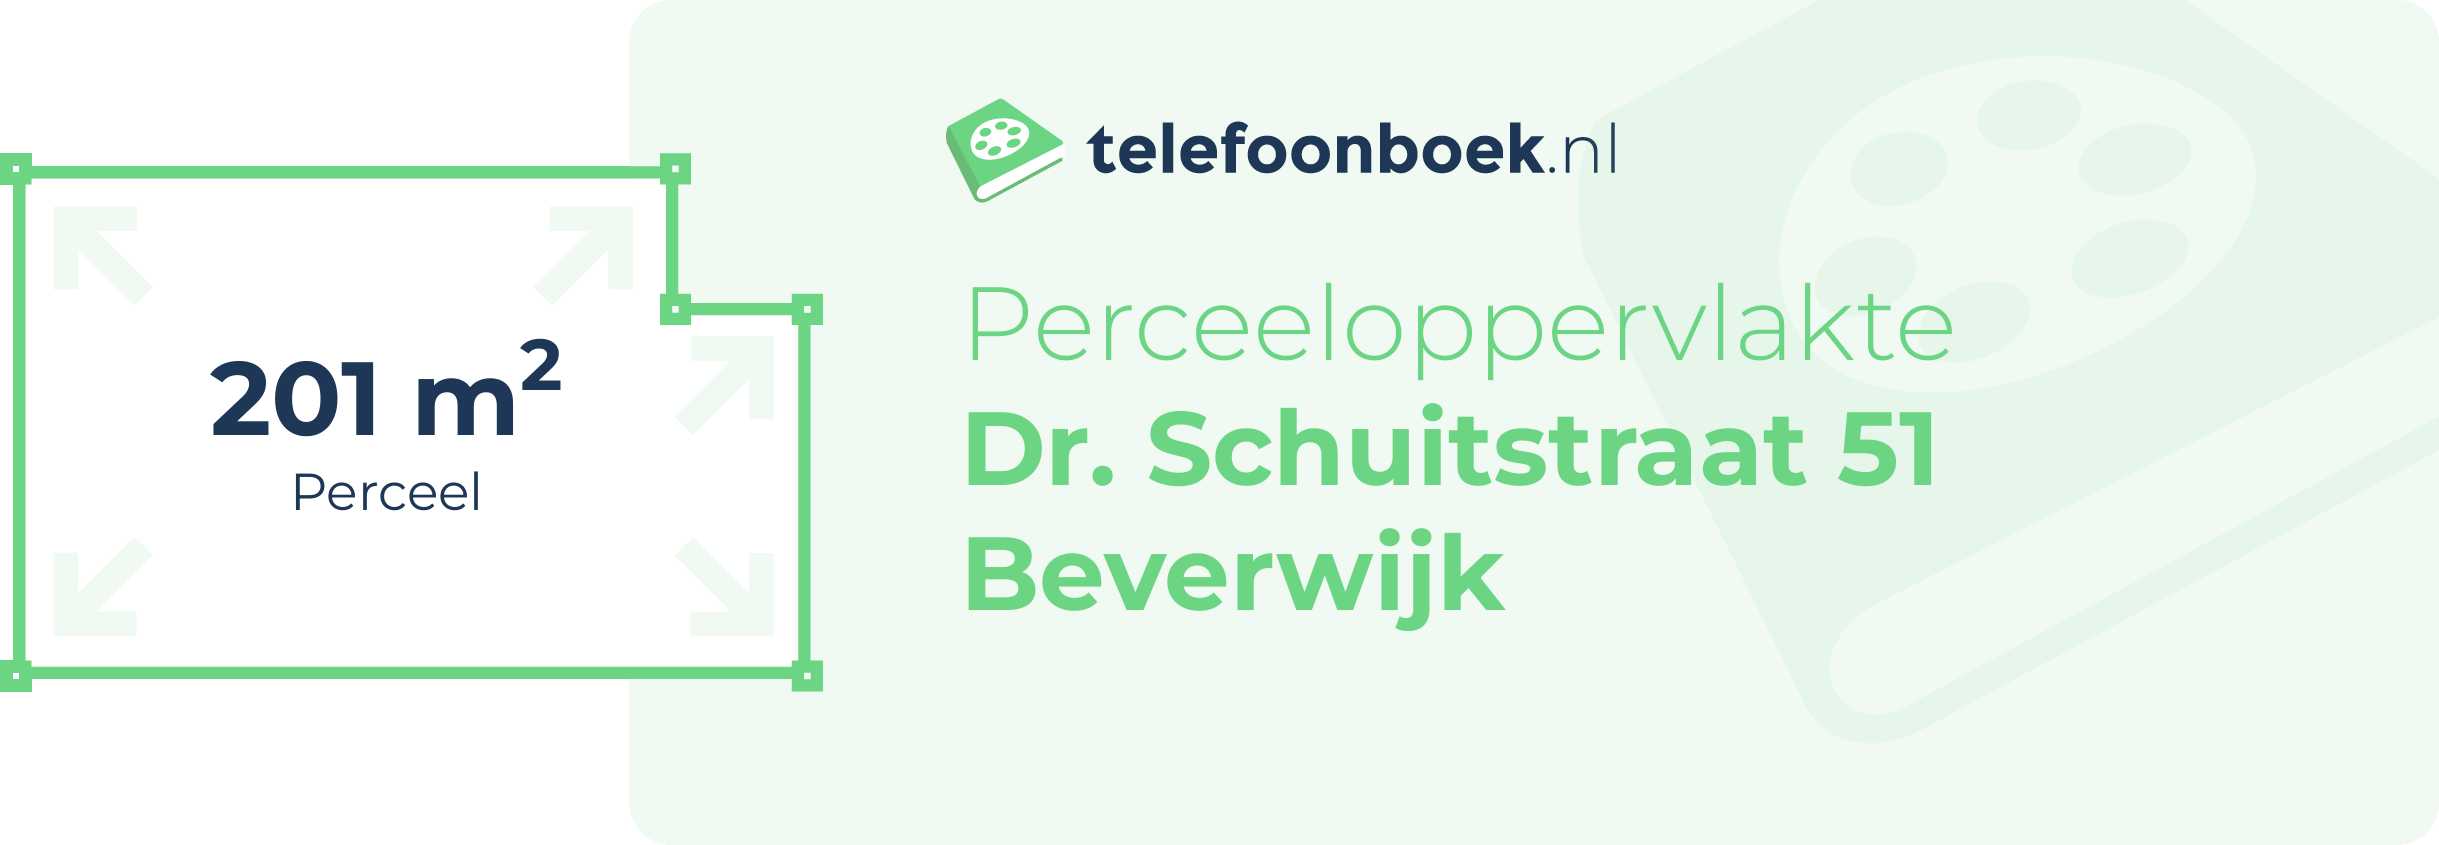 Perceeloppervlakte Dr. Schuitstraat 51 Beverwijk